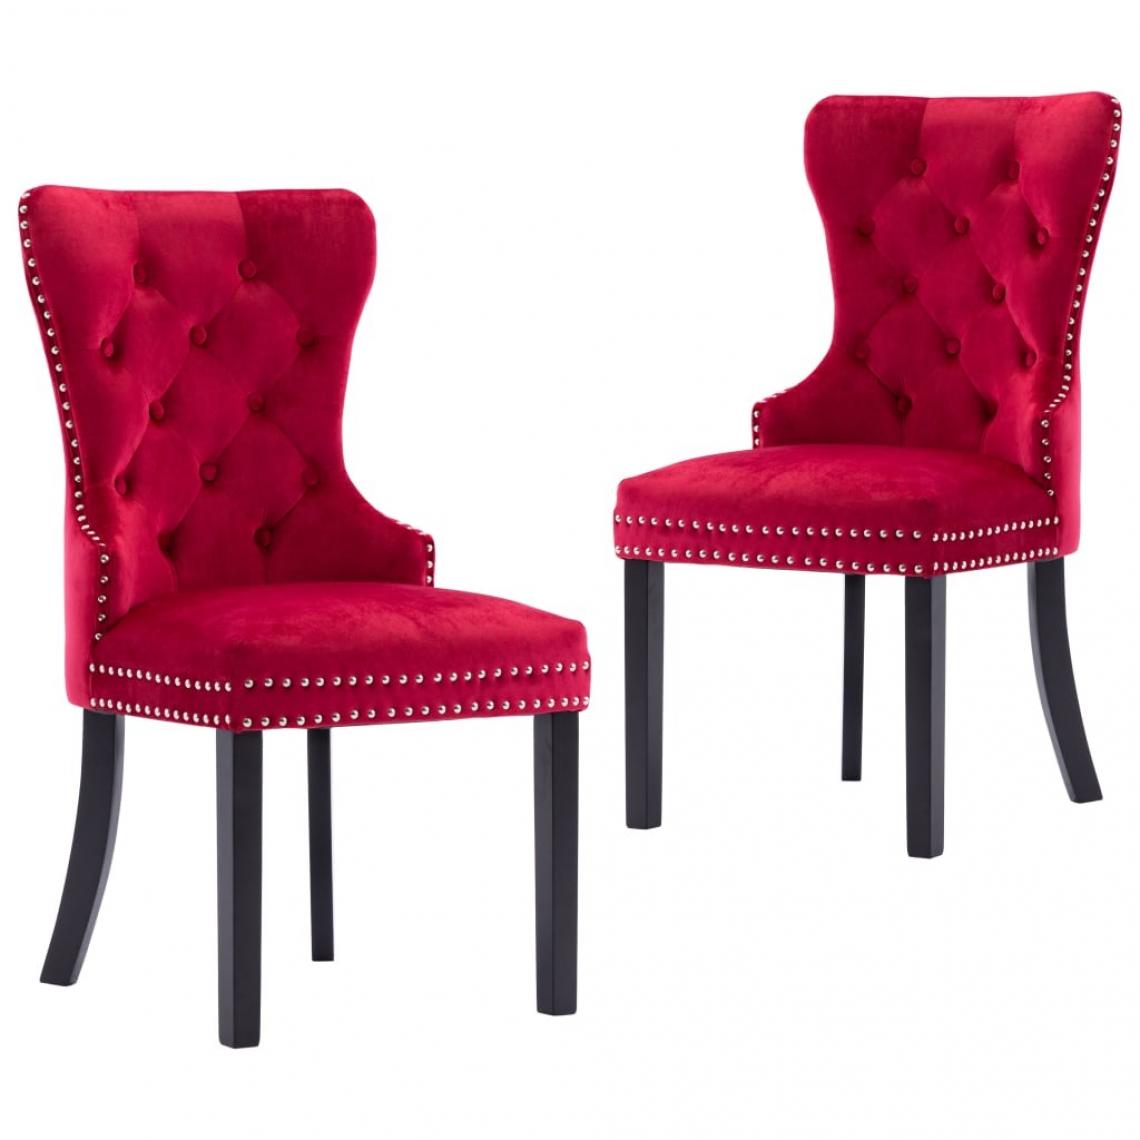 Decoshop26 - Lot de 2 chaises de salle à manger cuisine design classique velours rouge bordeaux CDS021010 - Chaises